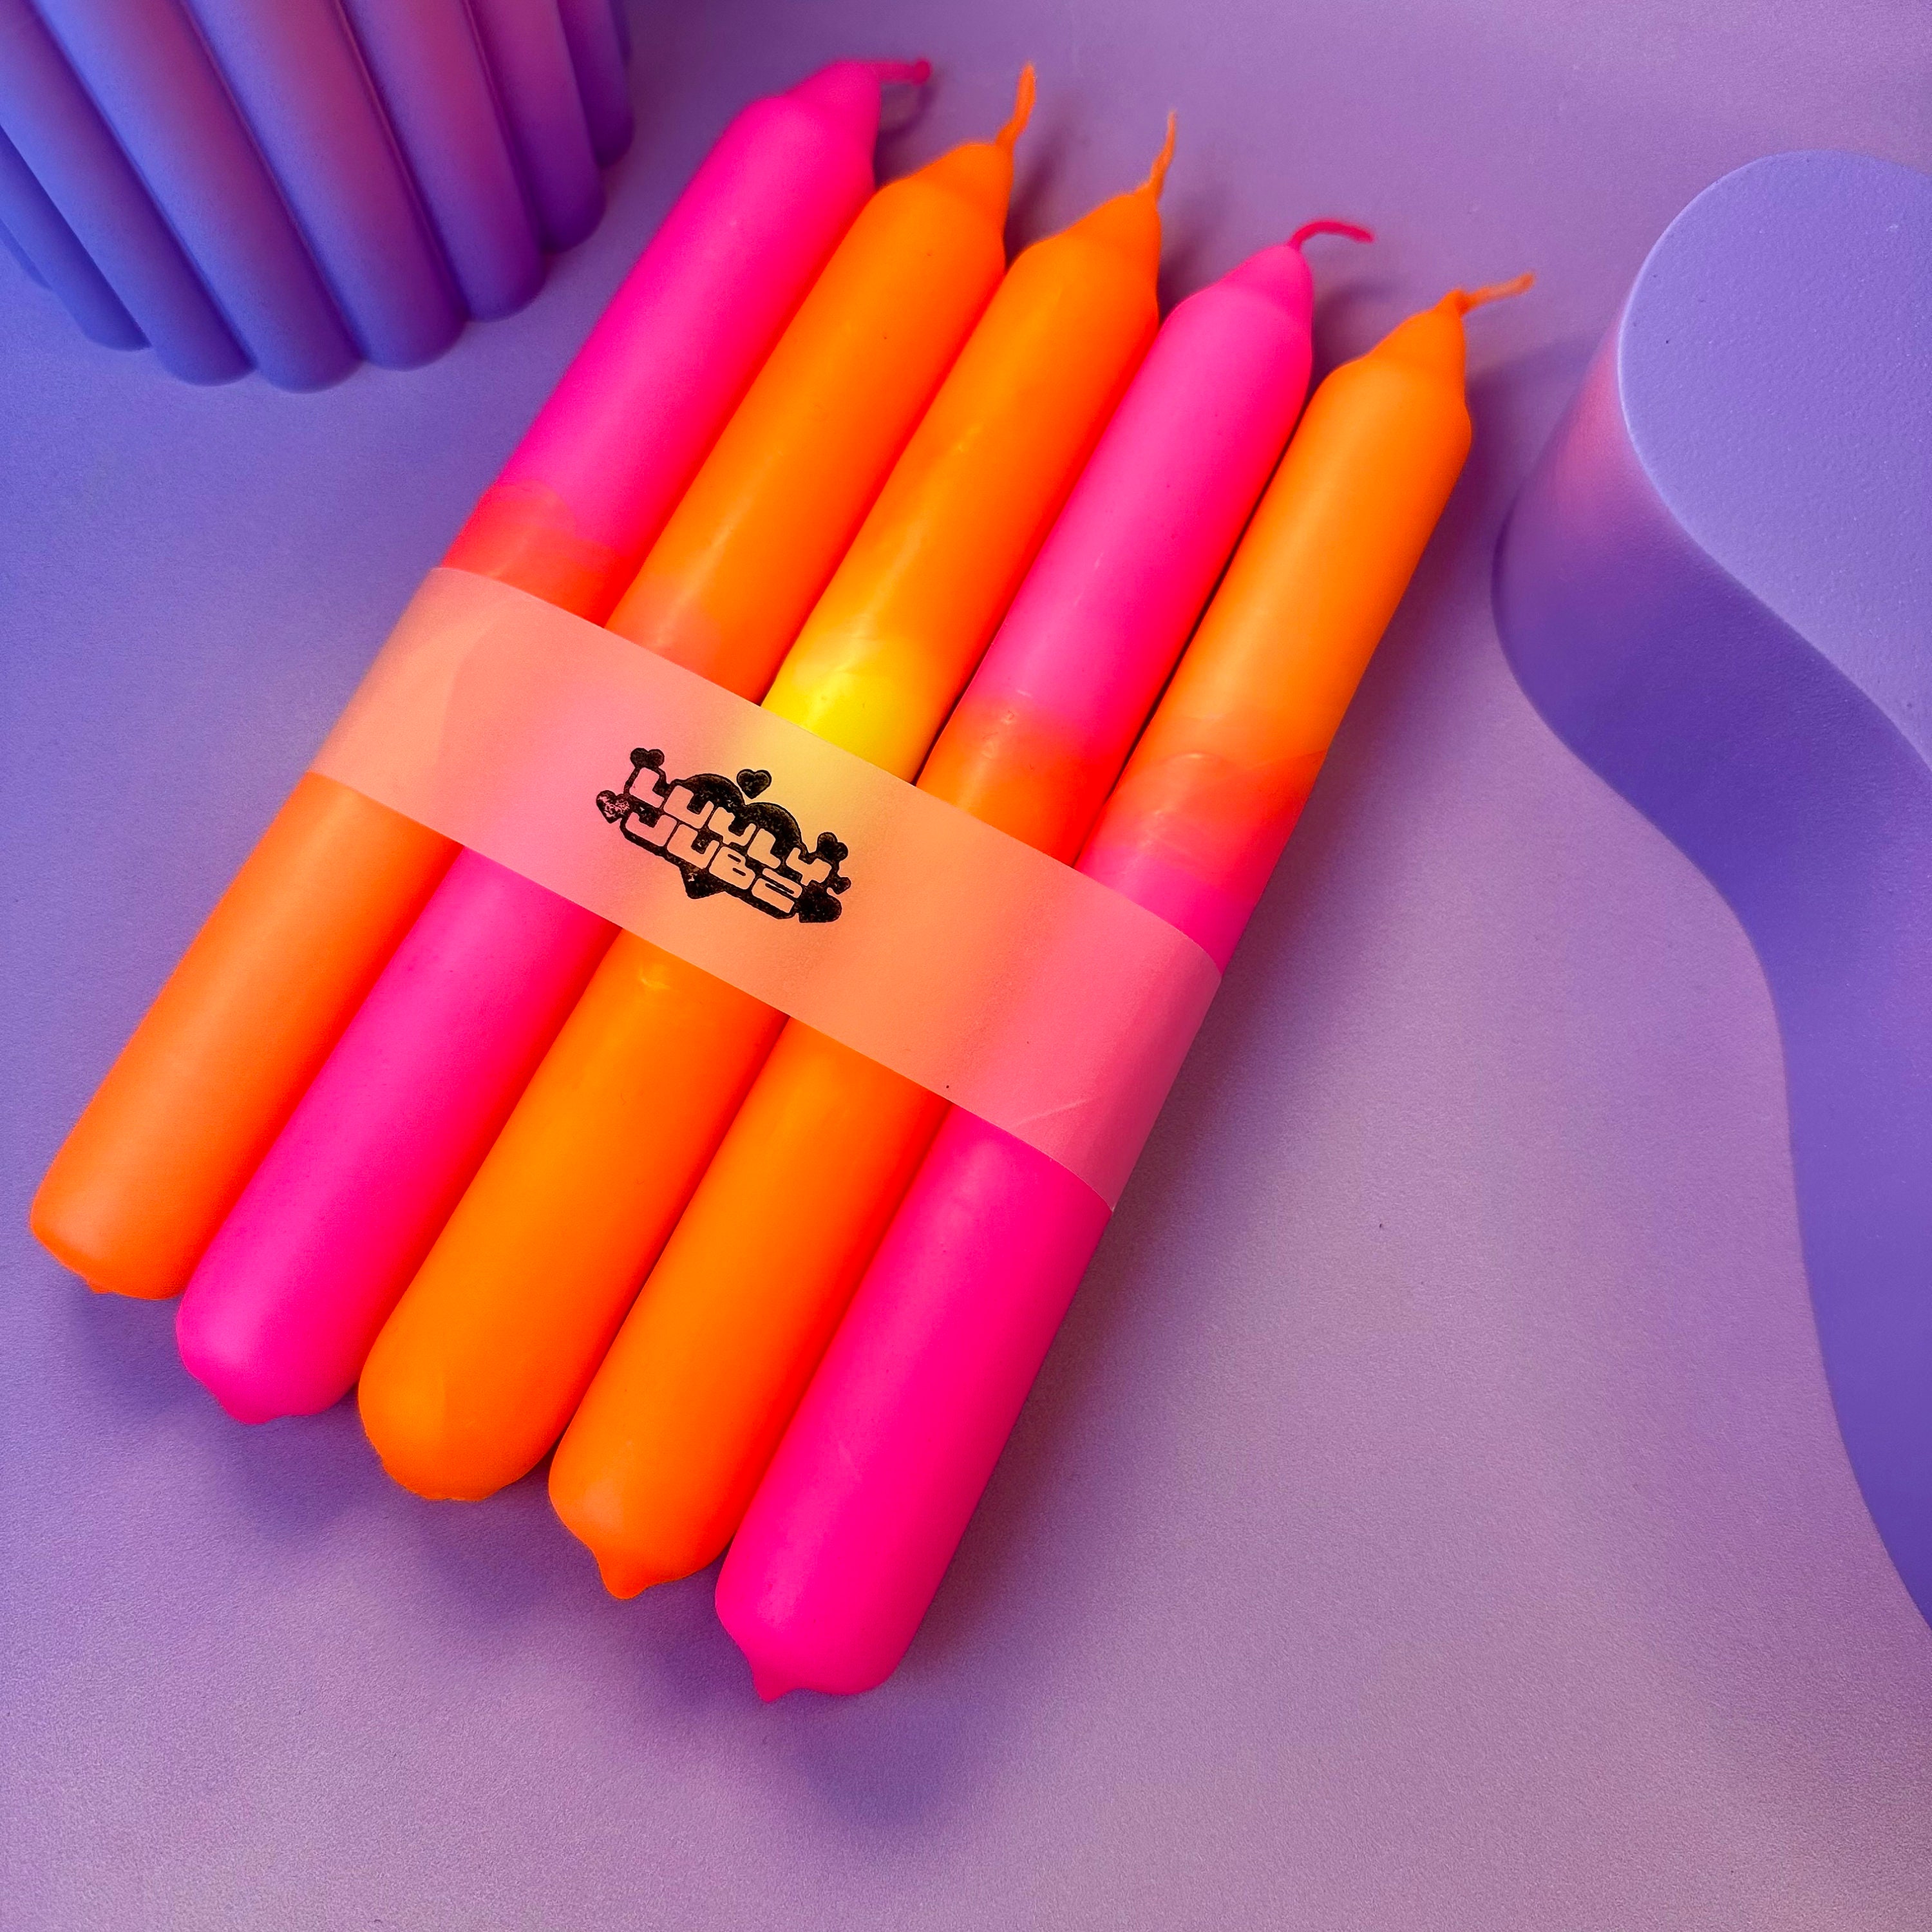 18 Color Set Liquid Candle Dye 9oz Total Includes Plastic Pipettes 